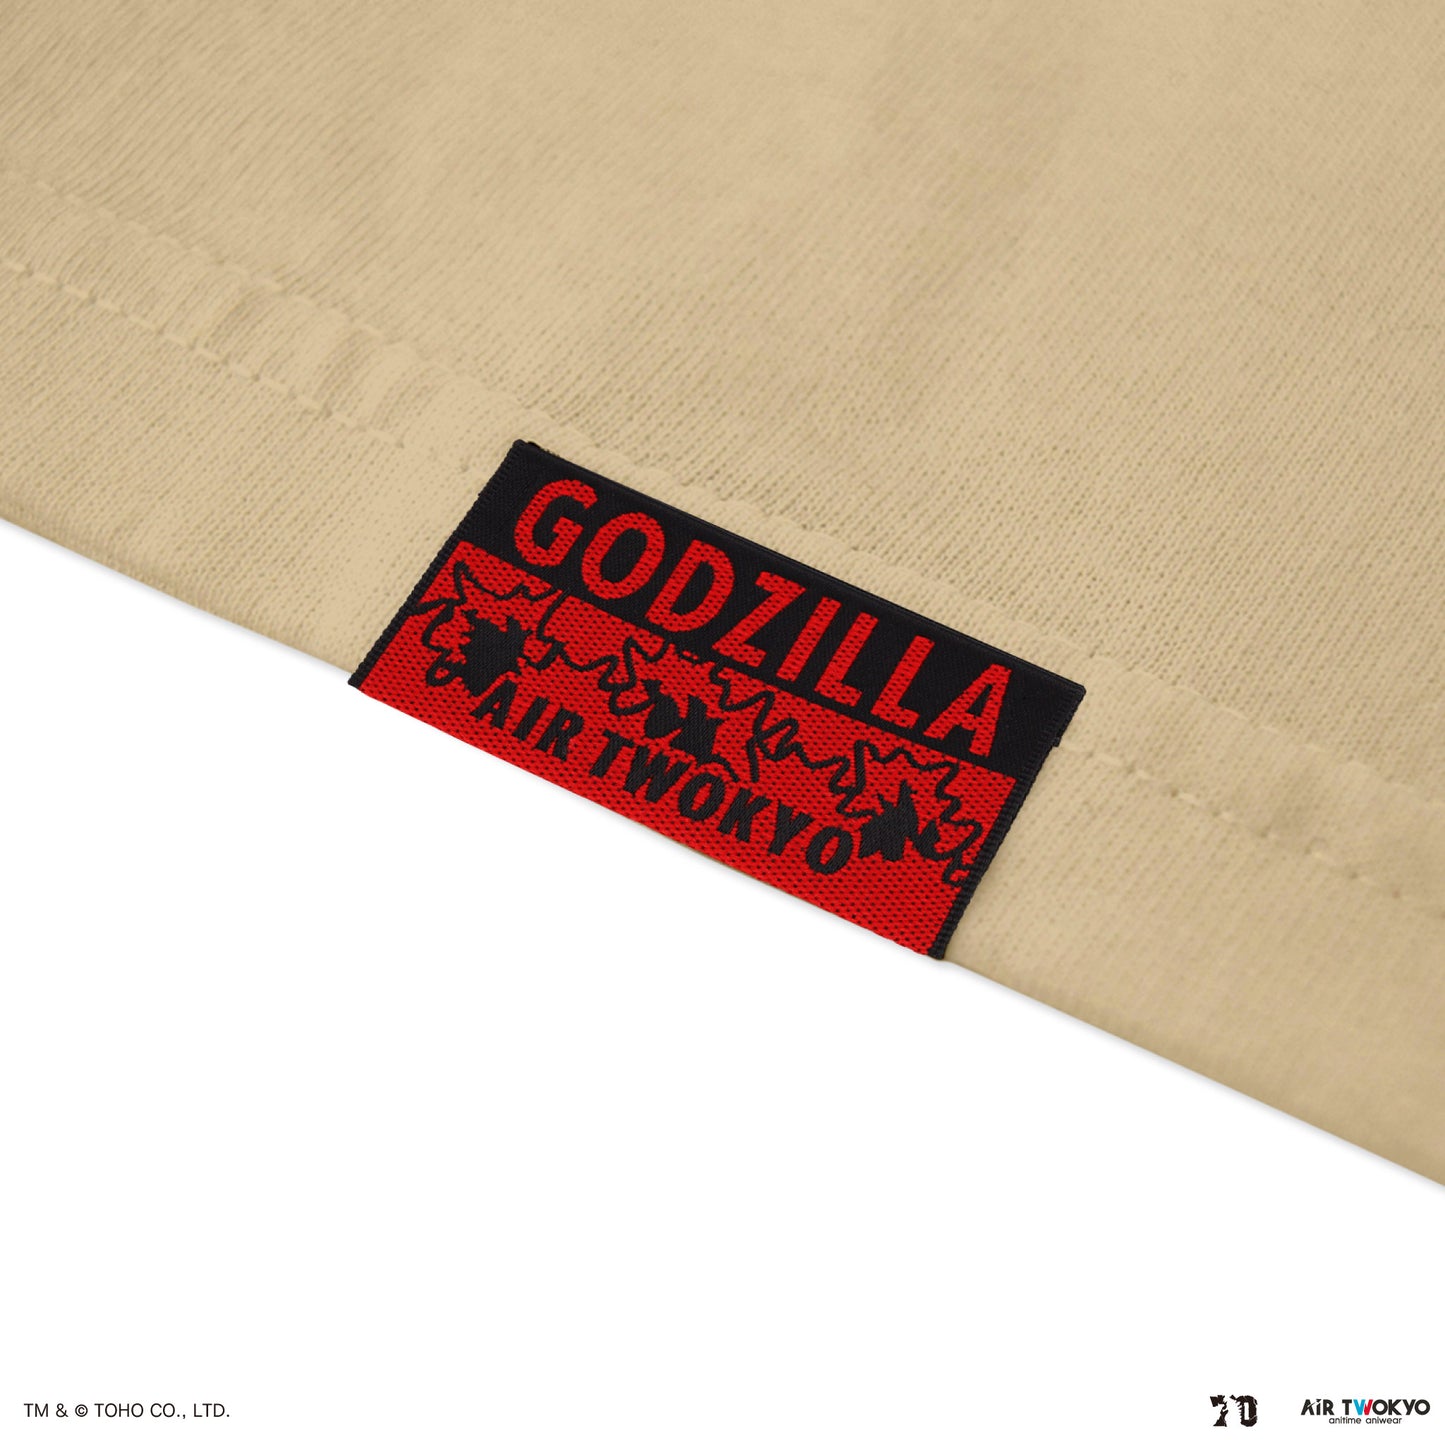 GODZILLA 70th Anniversary "GODZILLA MINUS ONE" Scene Illustration T-shirt3(Godzilla lands Ginza)